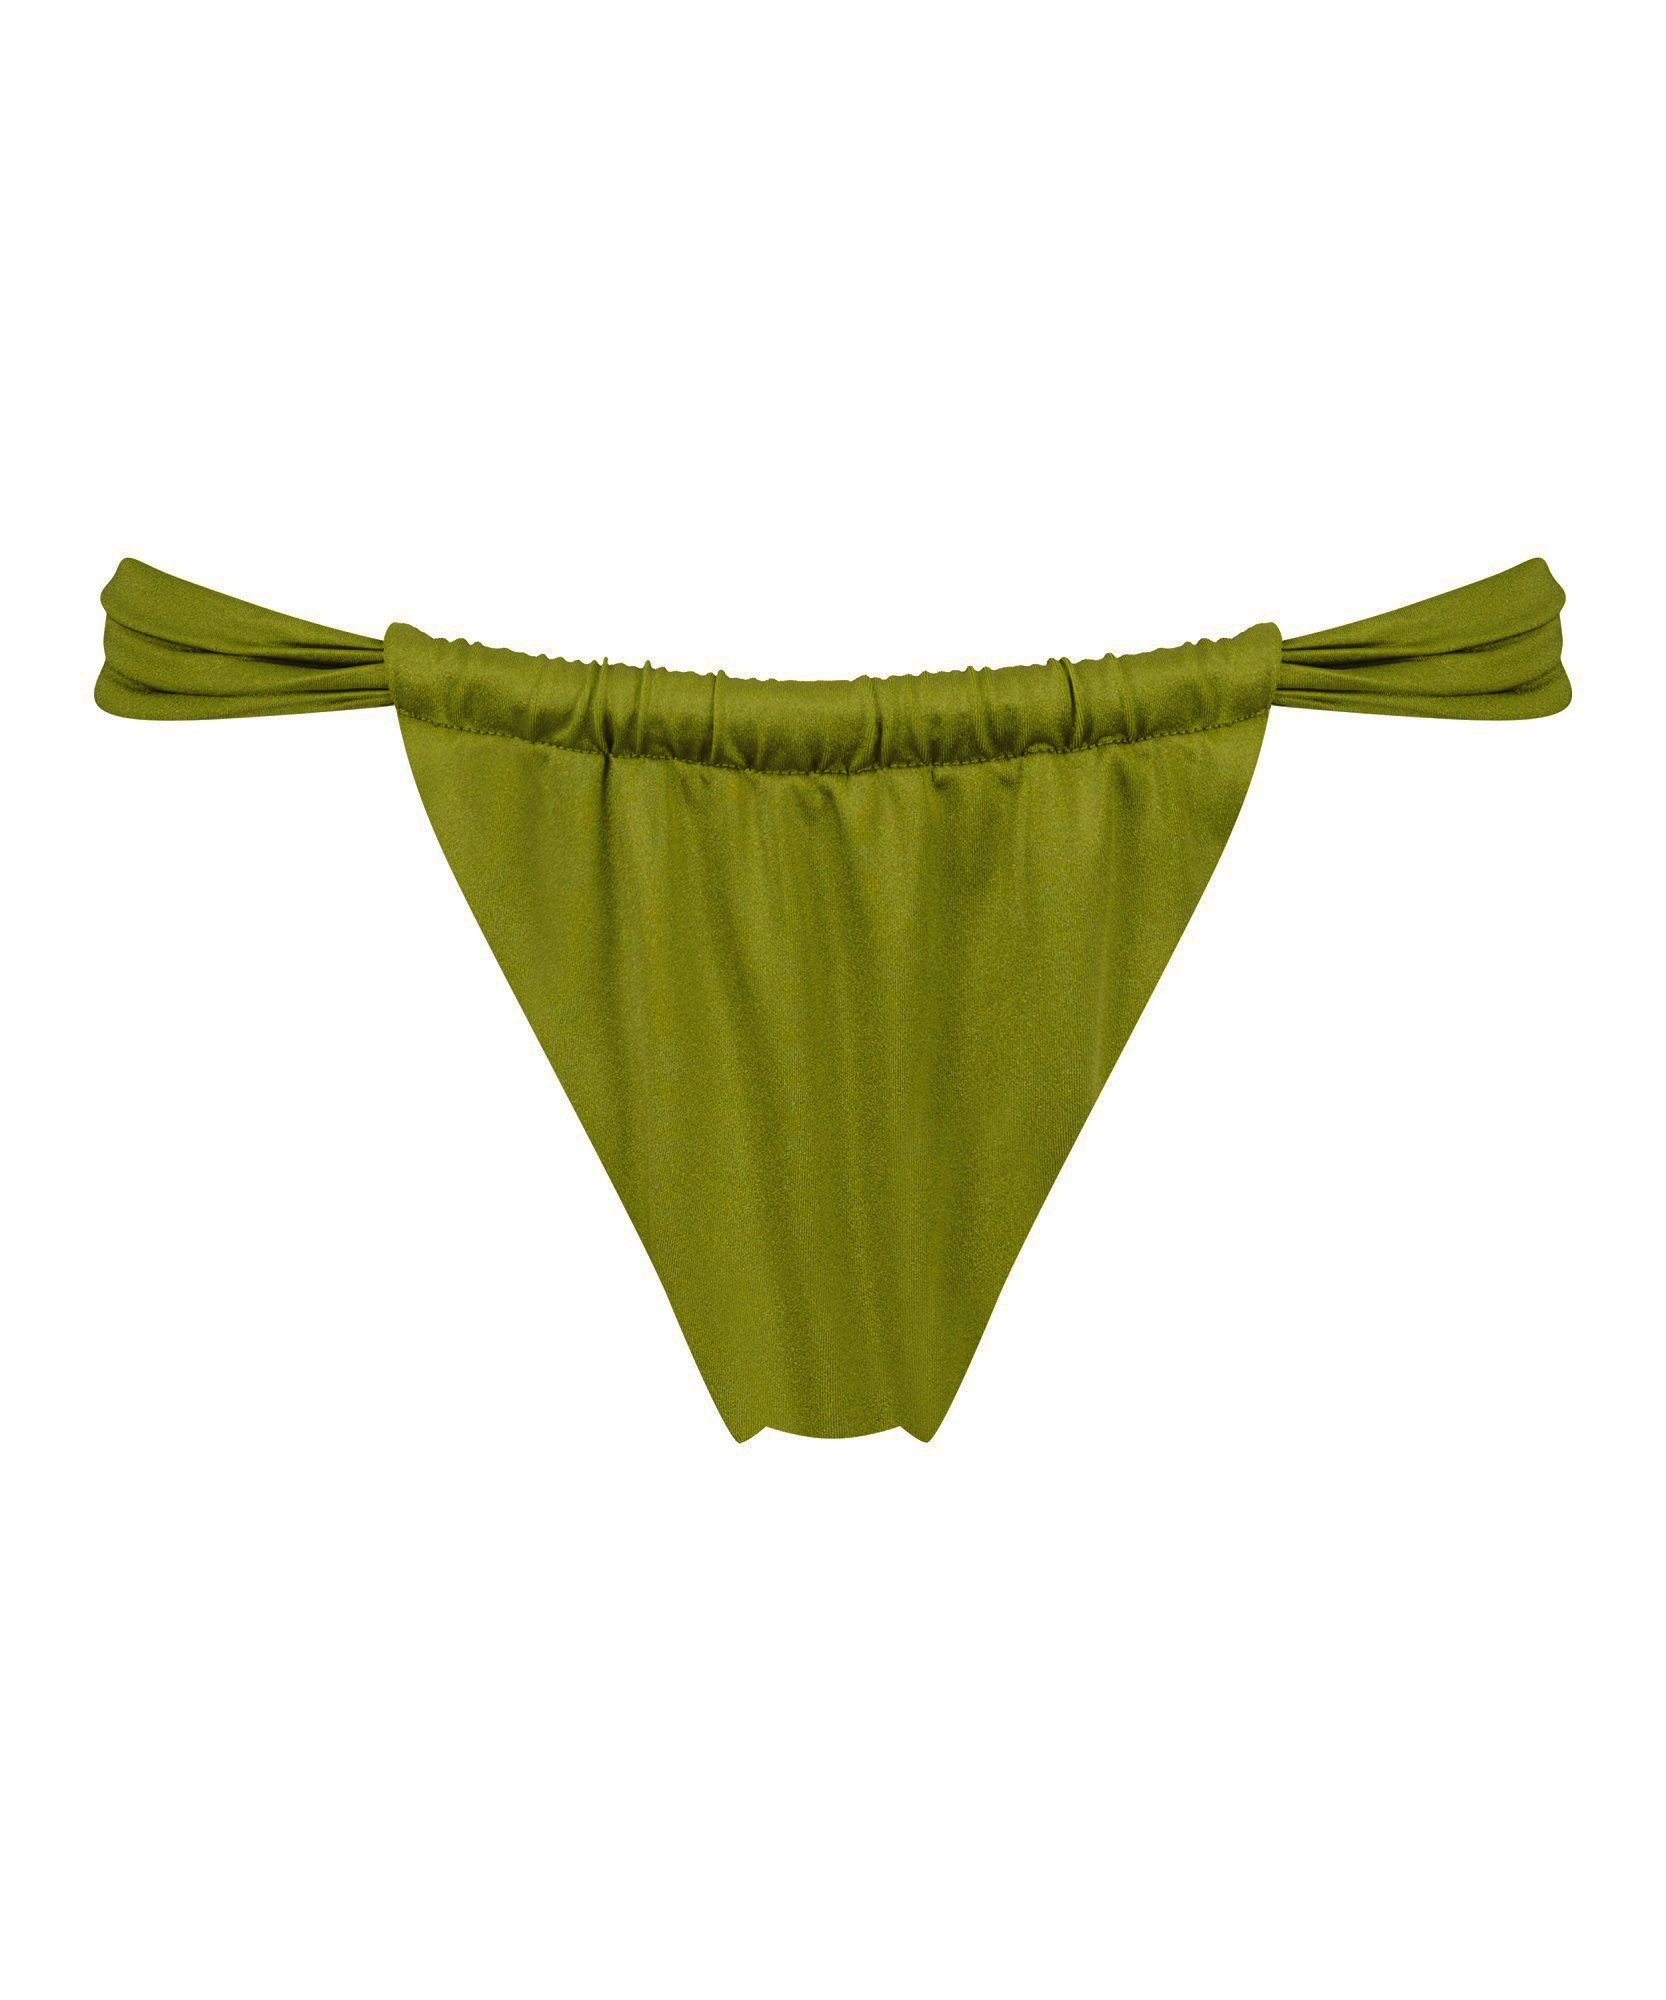 Palm High Leg Bikini Bottoms, Green, main